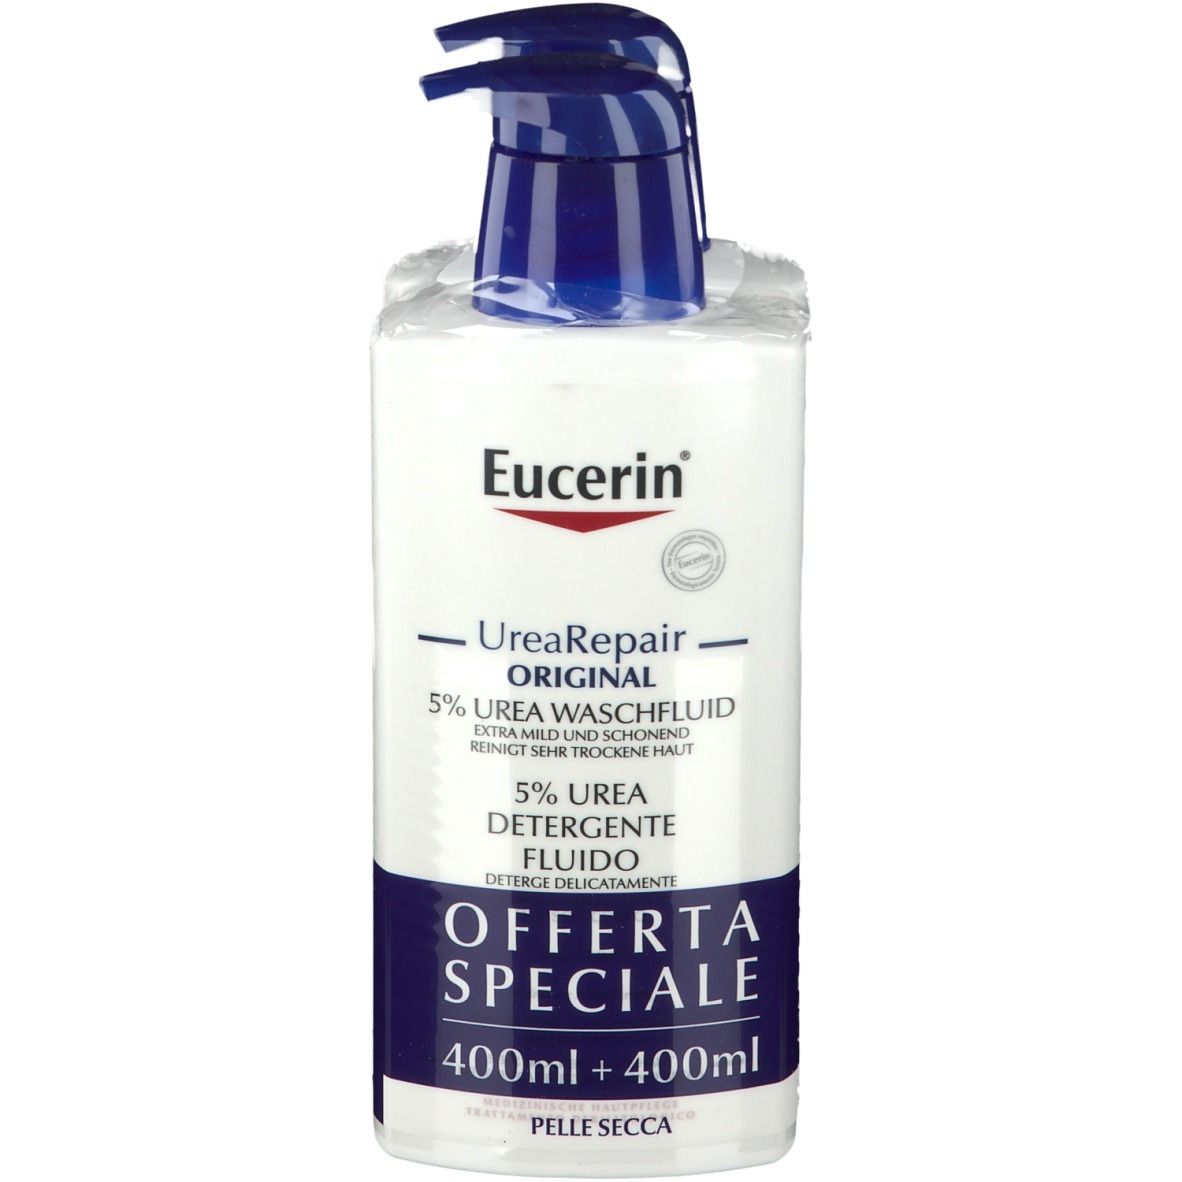 Image of Eucerin® UreaRepair Flüssigreiniger 5% Urea